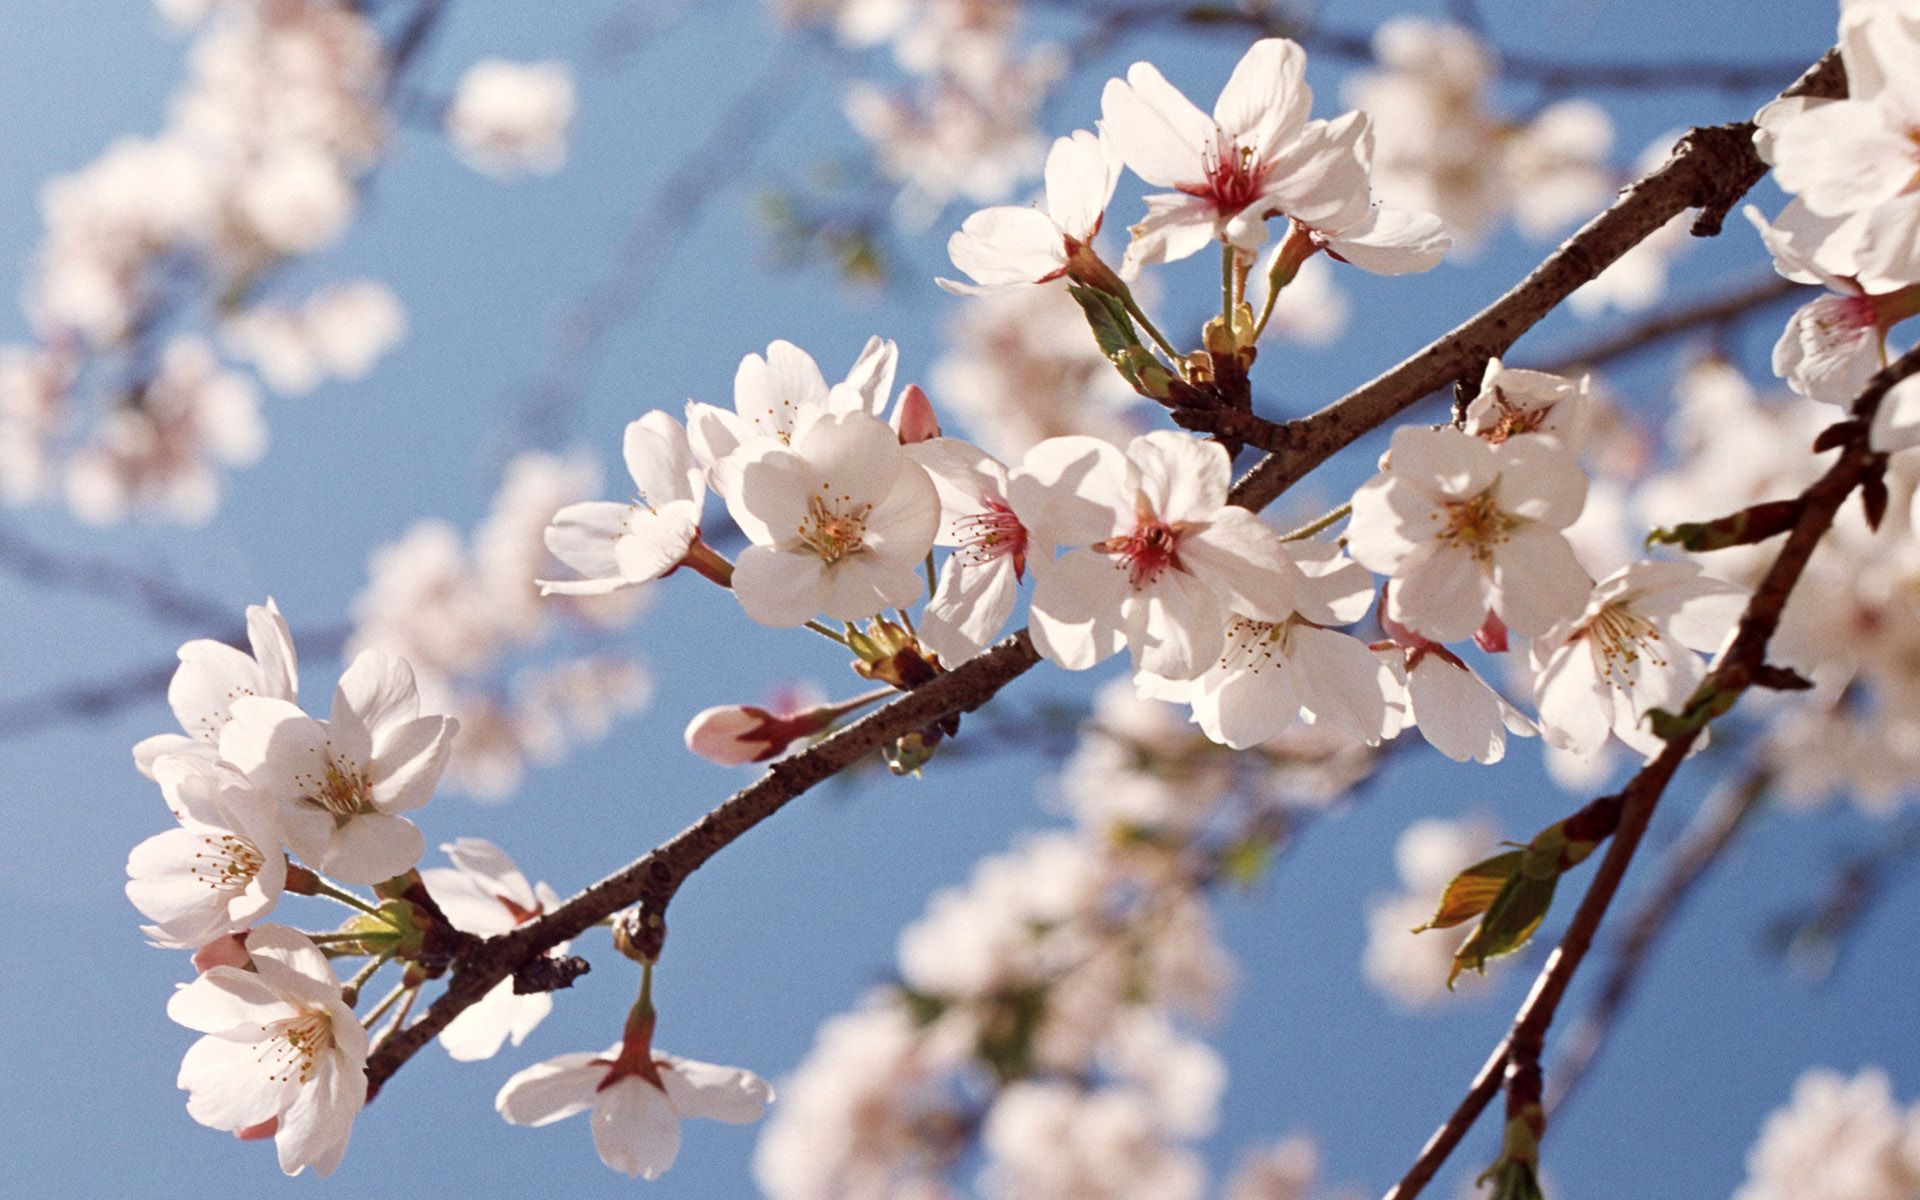 دانلود تصویر جالب و دیدنی از شکوفه سفید درخت هلو